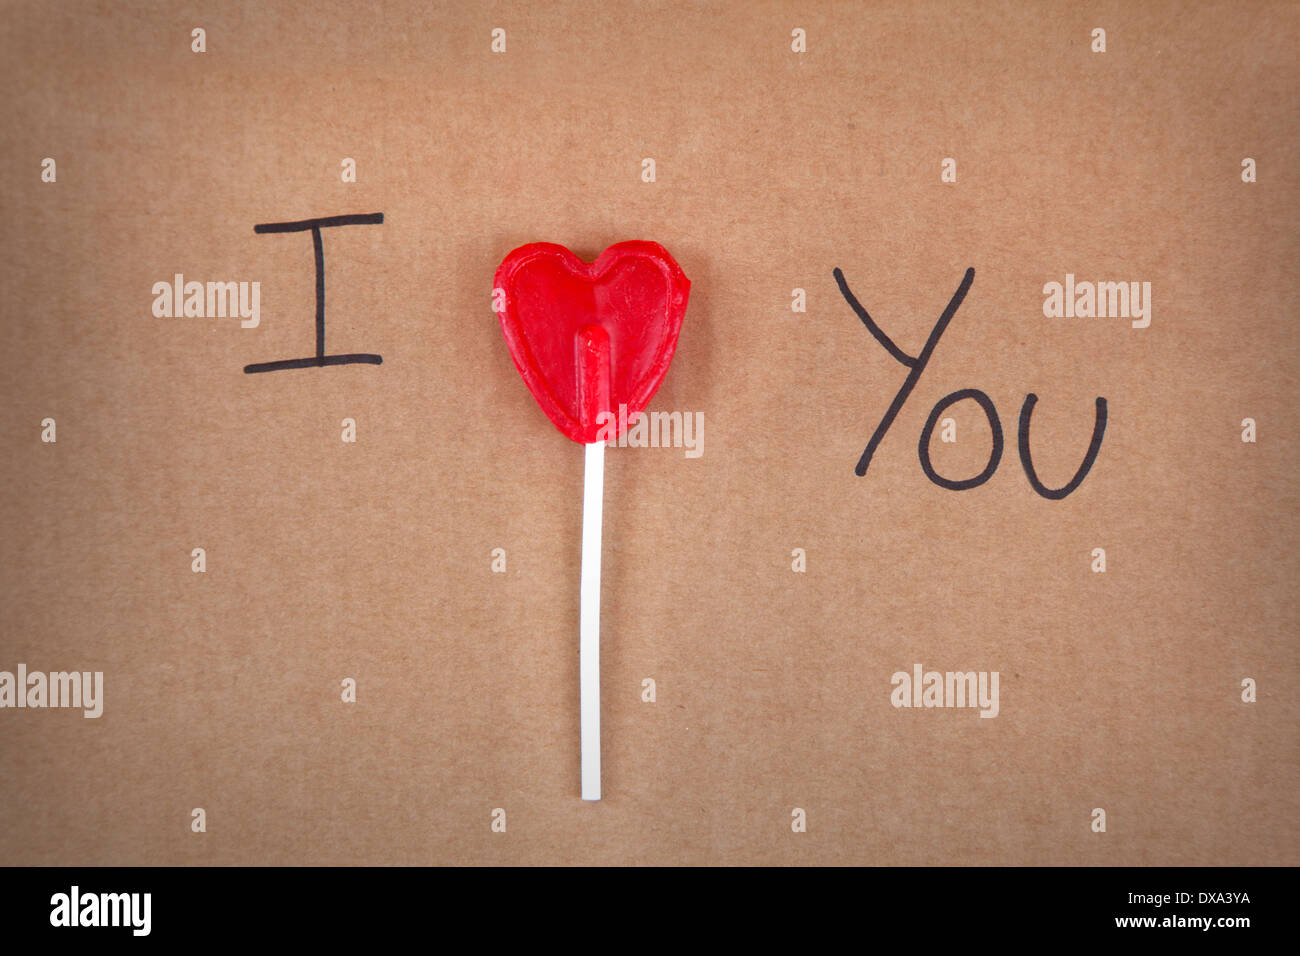 Ich liebe Sie Nachricht geschrieben einen Herz-Form-Lollipop auf Karton Stockfoto